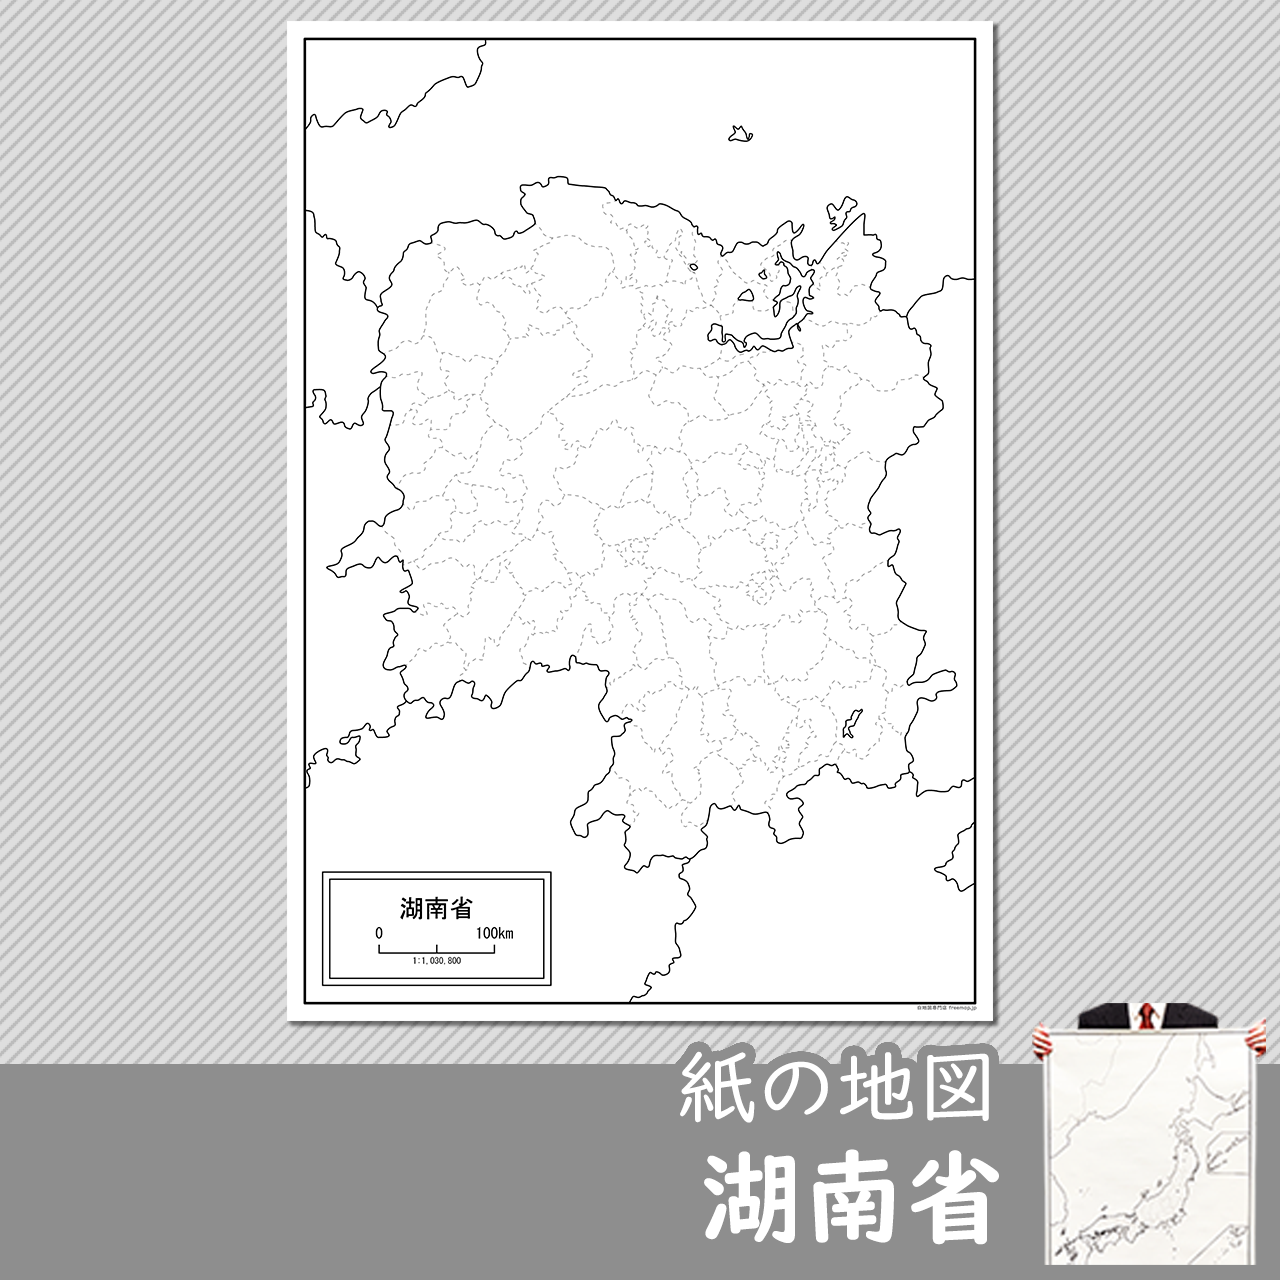 湖南省（こなんしょう）の紙の白地図のサムネイル